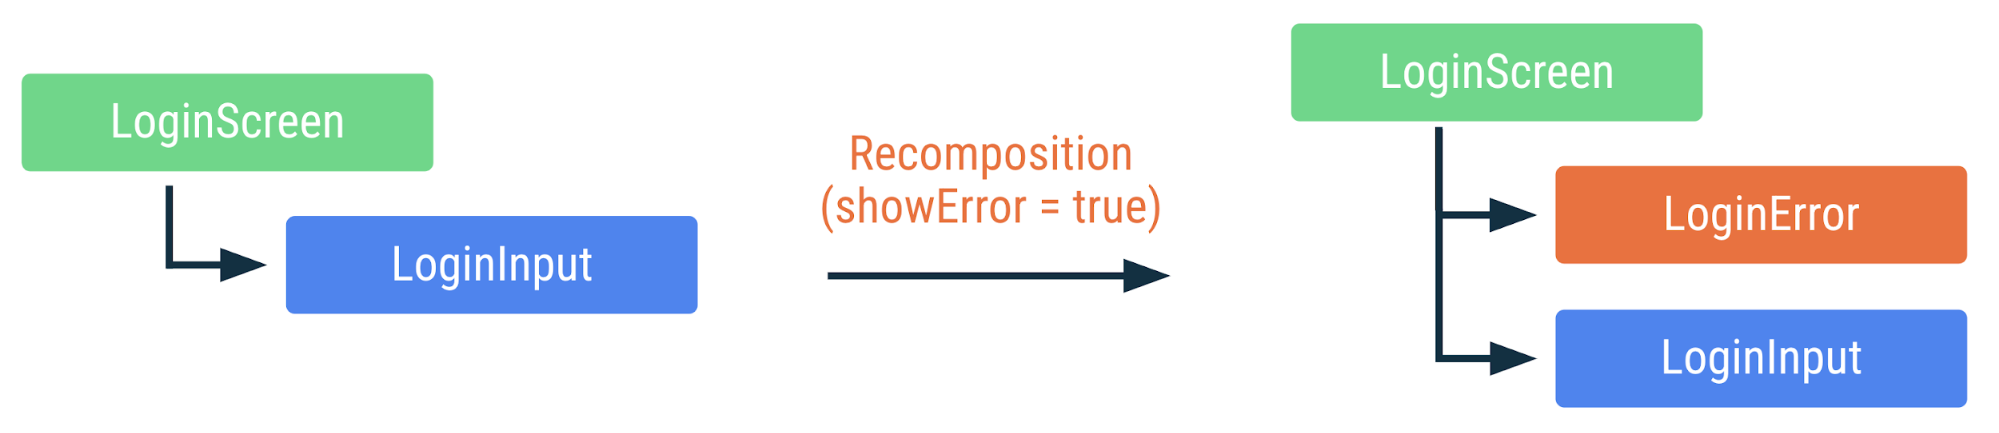 Sơ đồ cho thấy cách kết hợp lại mã trên khi cờ showError được thay đổi thành true. Bổ sung thành phần kết hợp LoginError, nhưng không kết hợp lại các thành phần kết hợp khác.